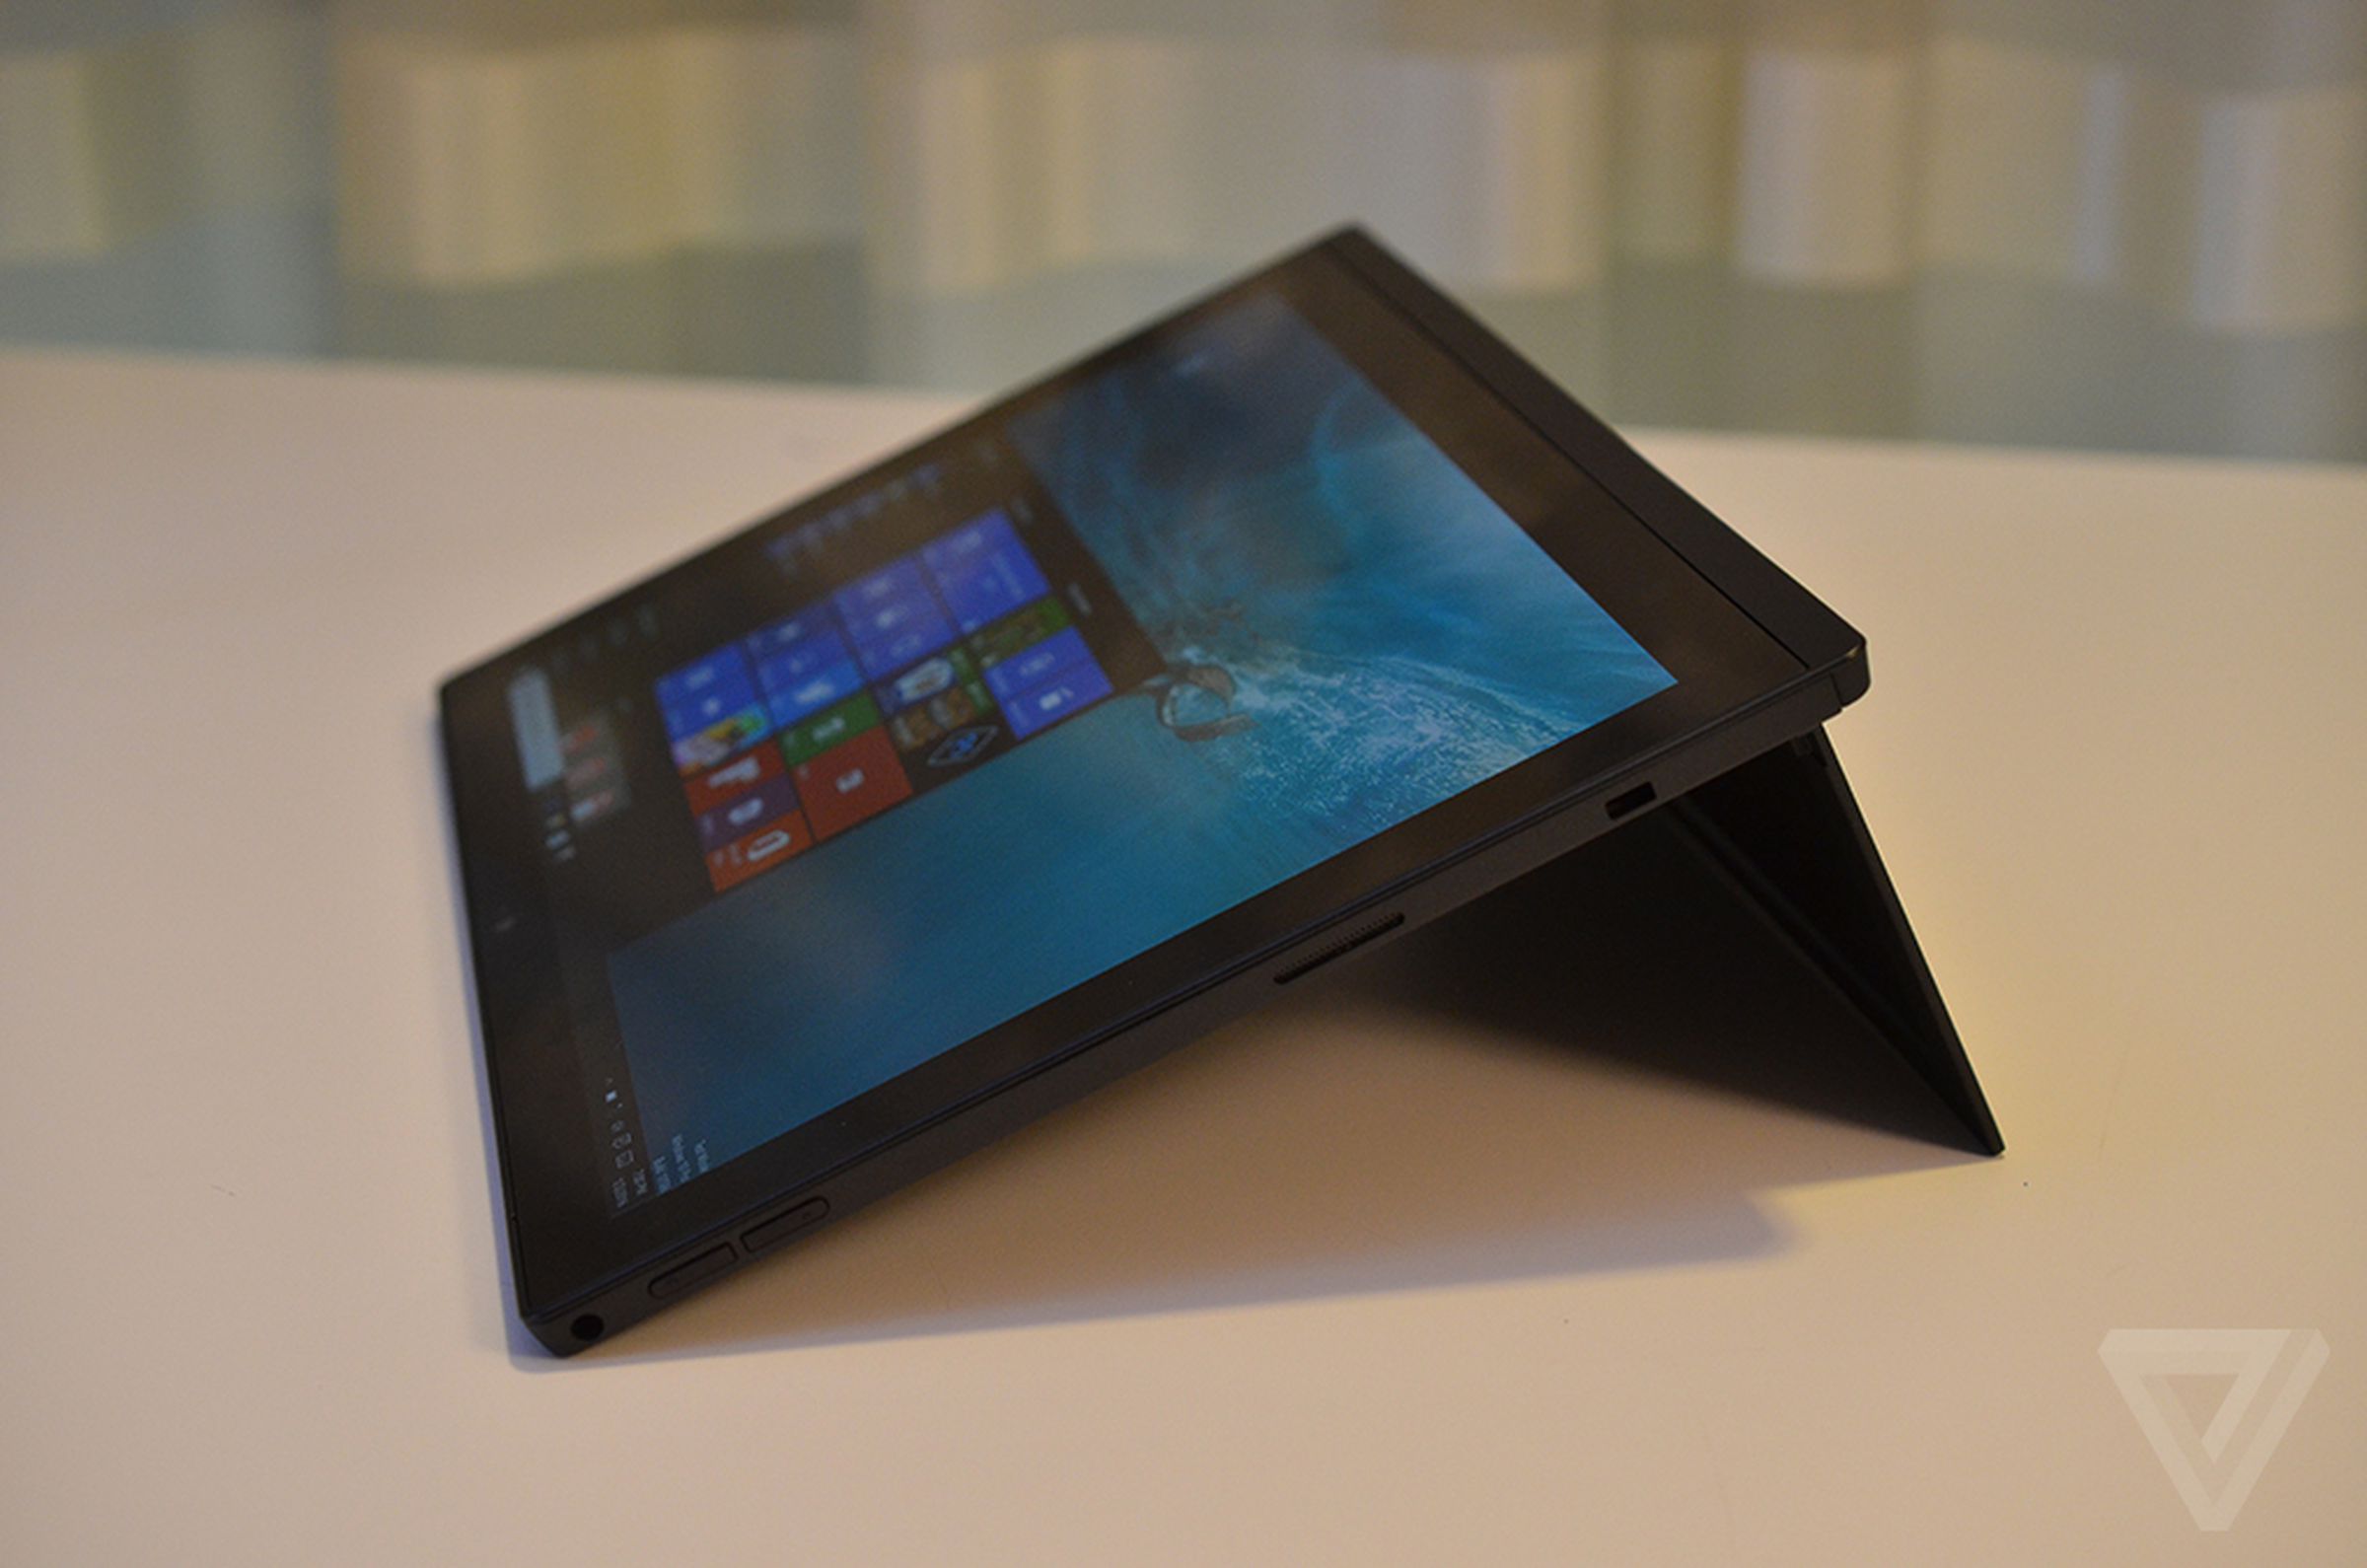 Lenovo X1 Tablet hands-on photos